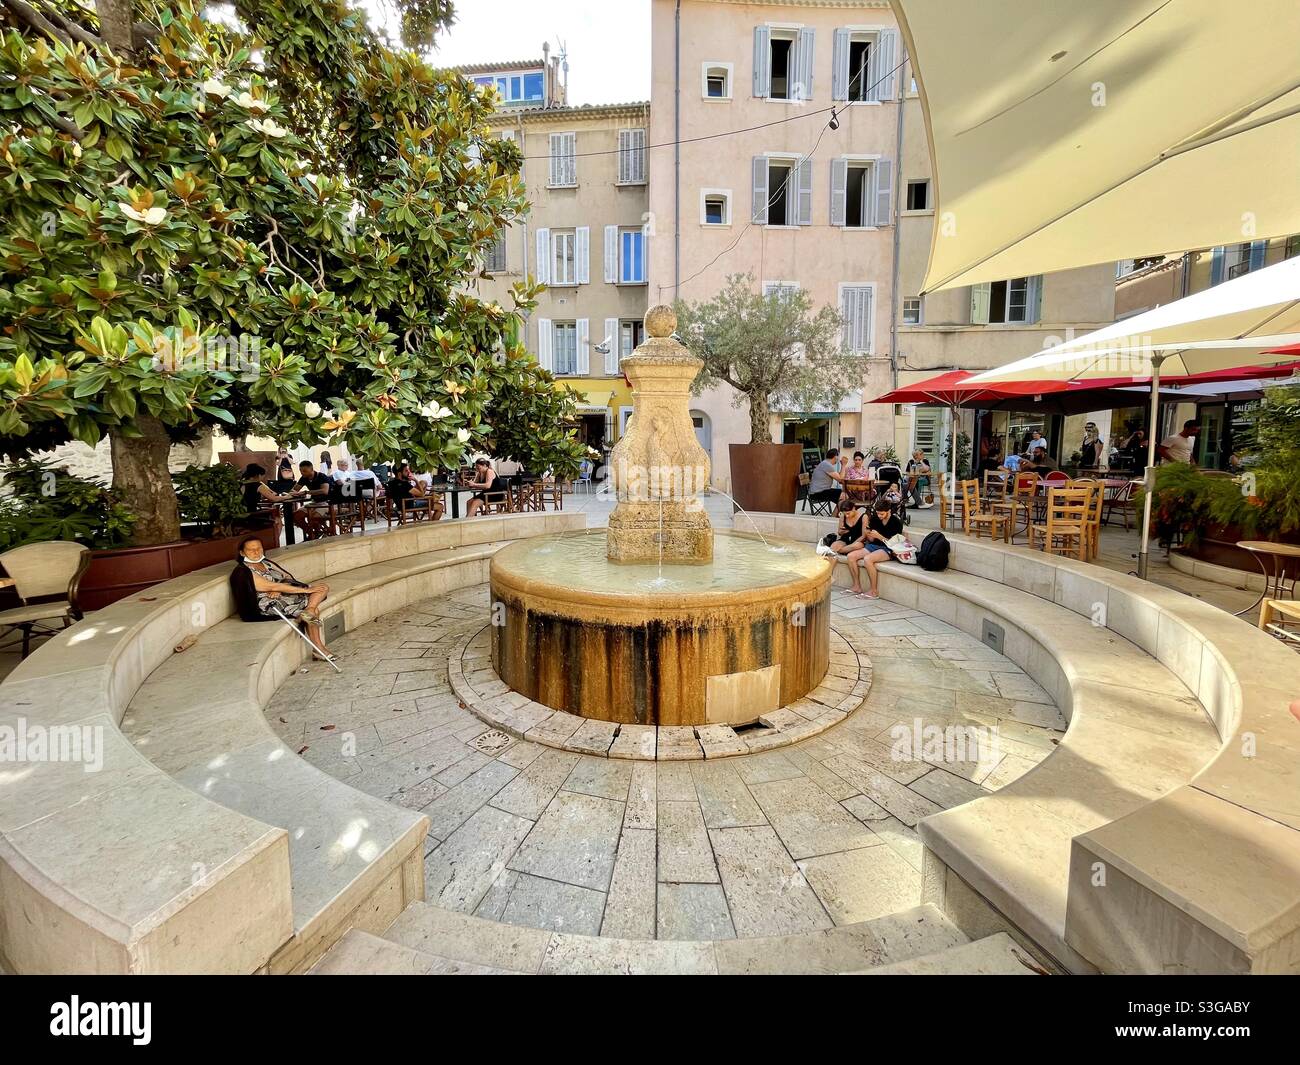 Ancienne fontaine publique entourée d'arbres, de fleurs et de restaurants dans le centre-ville de la Ciotat, près de Marseille, Bouches-du-Rhône, Provence-Alpes-Côte d'Azur, sud de la France Banque D'Images